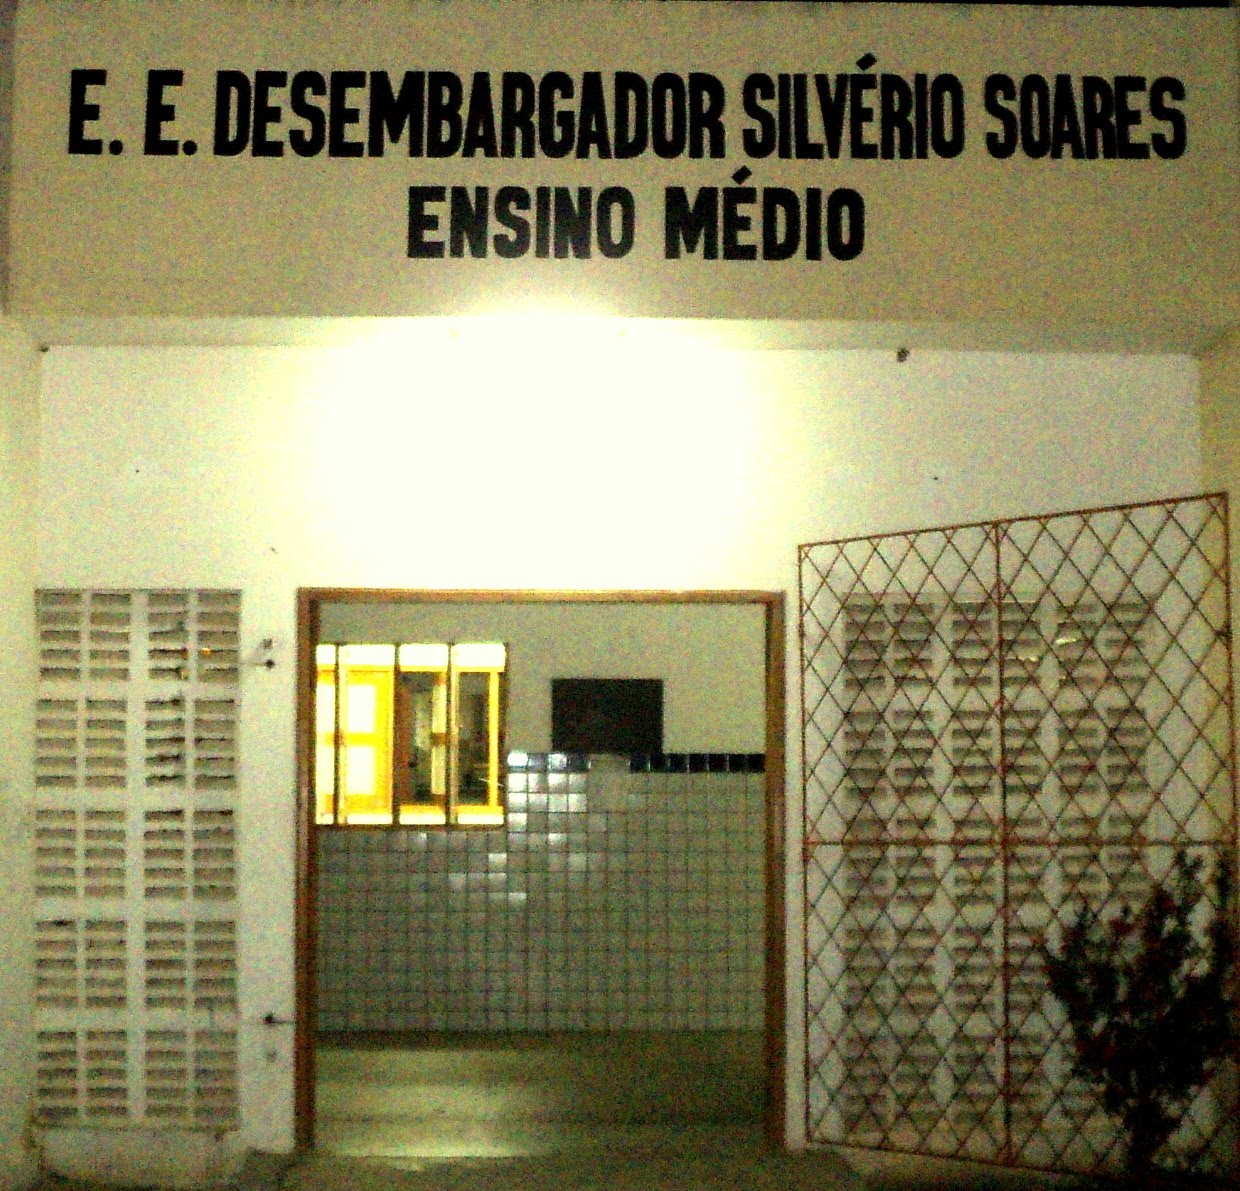 E. E. Desembargador Silvério Soares  -ENSINO MÉDIO-